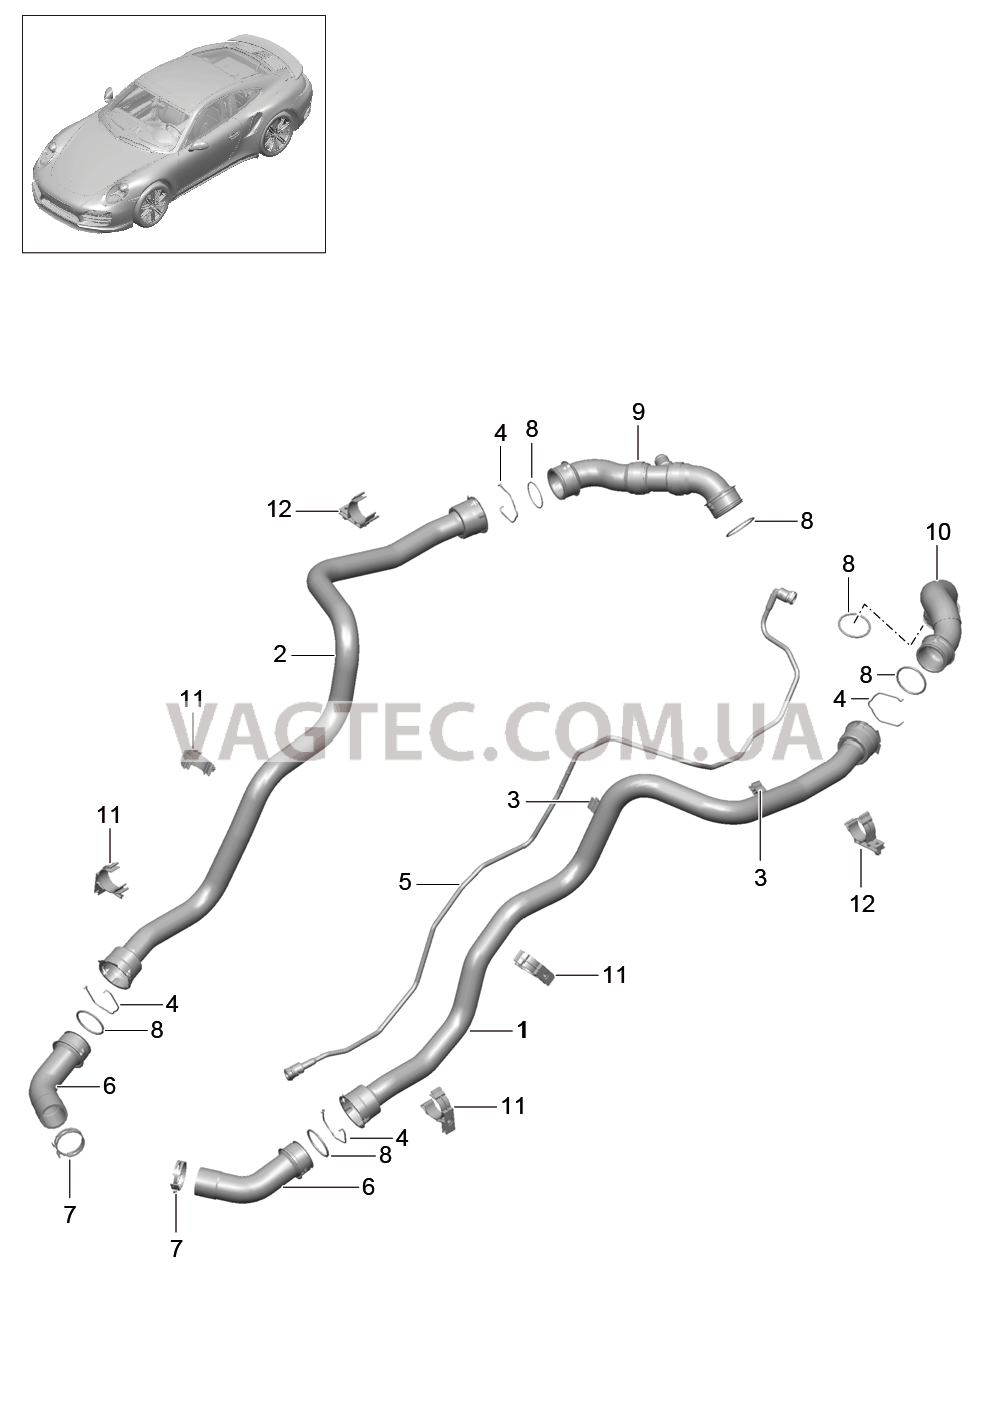 105-007 Водяное охлаждение 1, Задняя подвеска для PORSCHE Porsche991Turbo 2014-2017USA